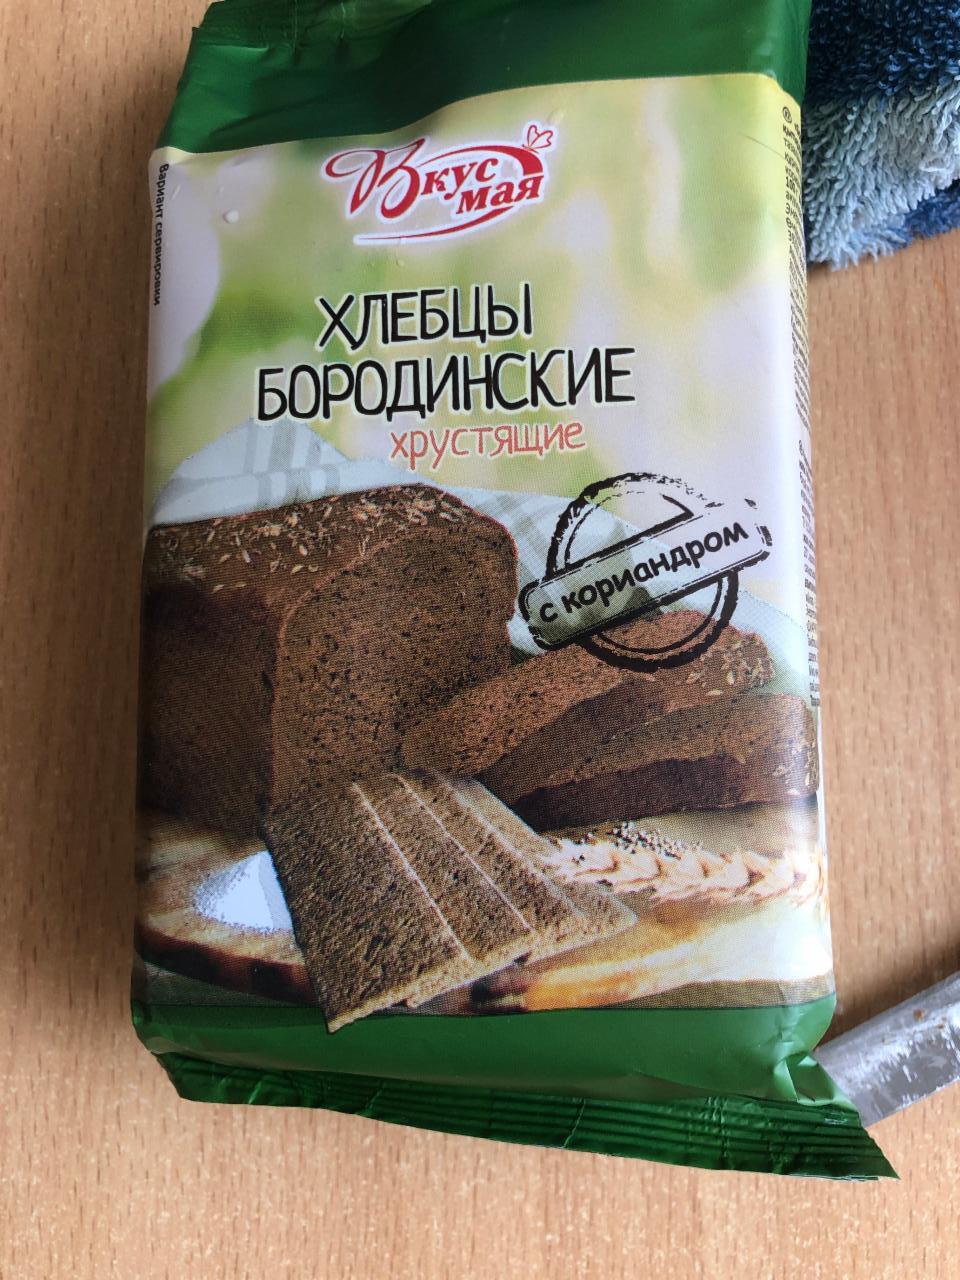 Фото - хлебцы бородинские Вкус Мая